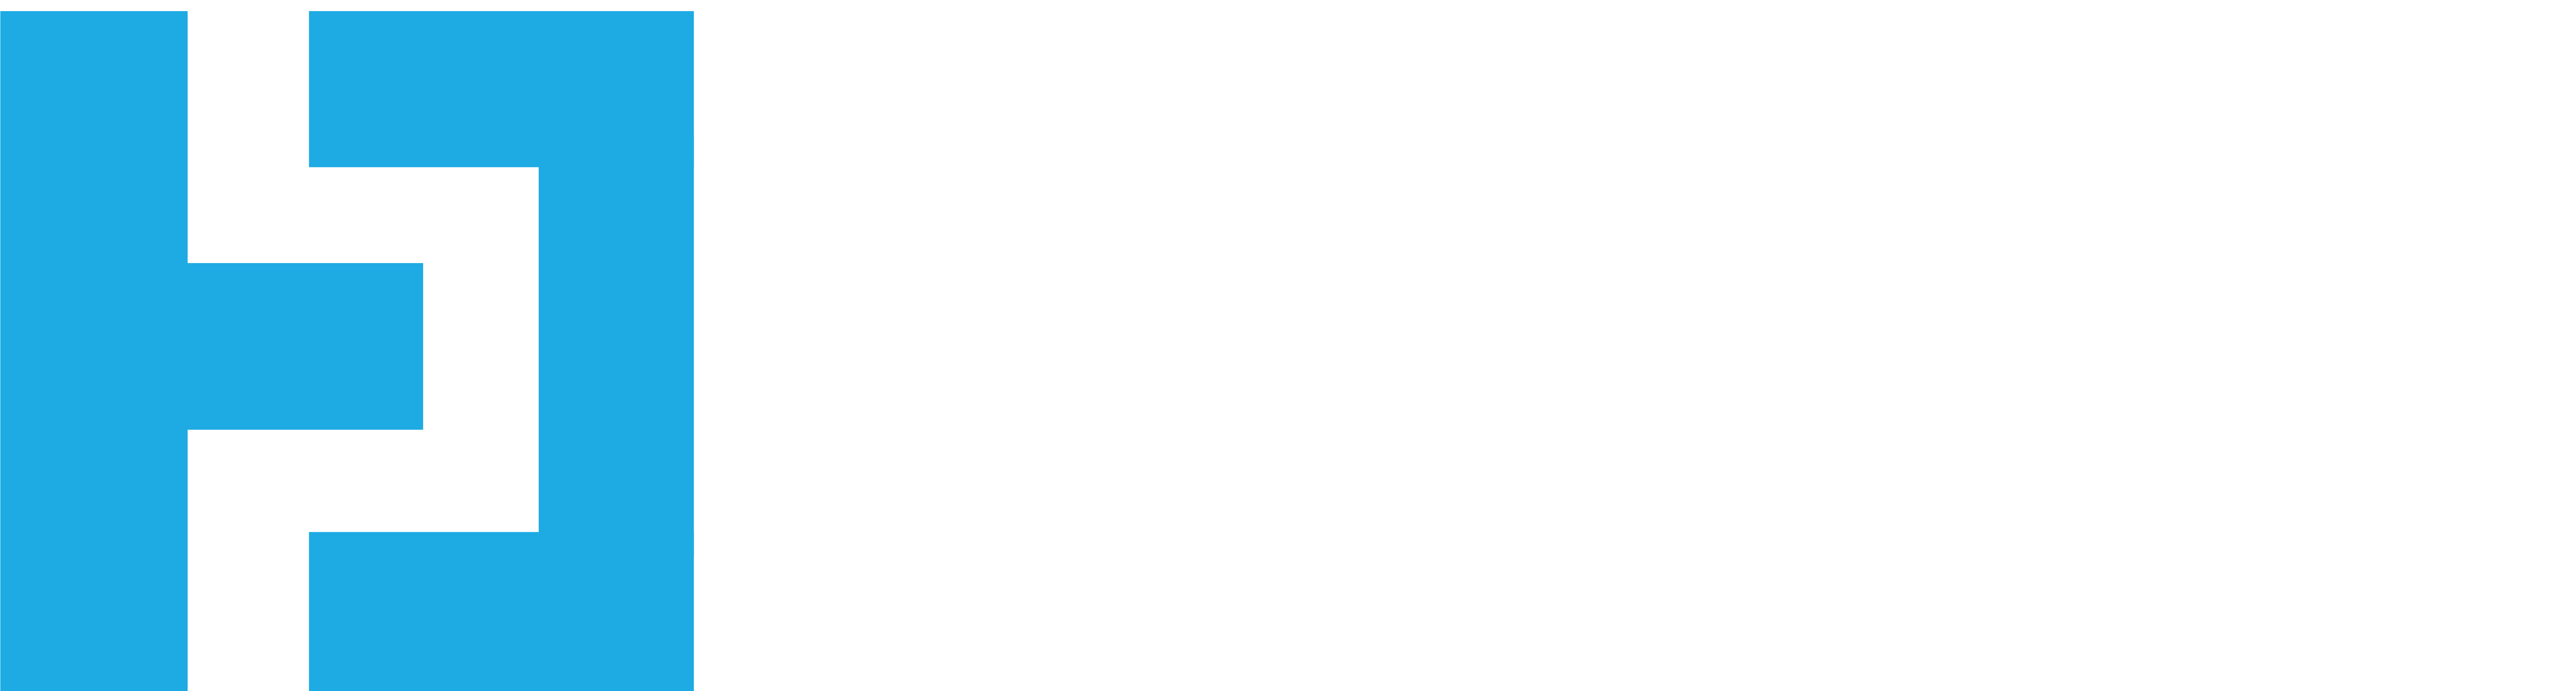 Tradesconnect